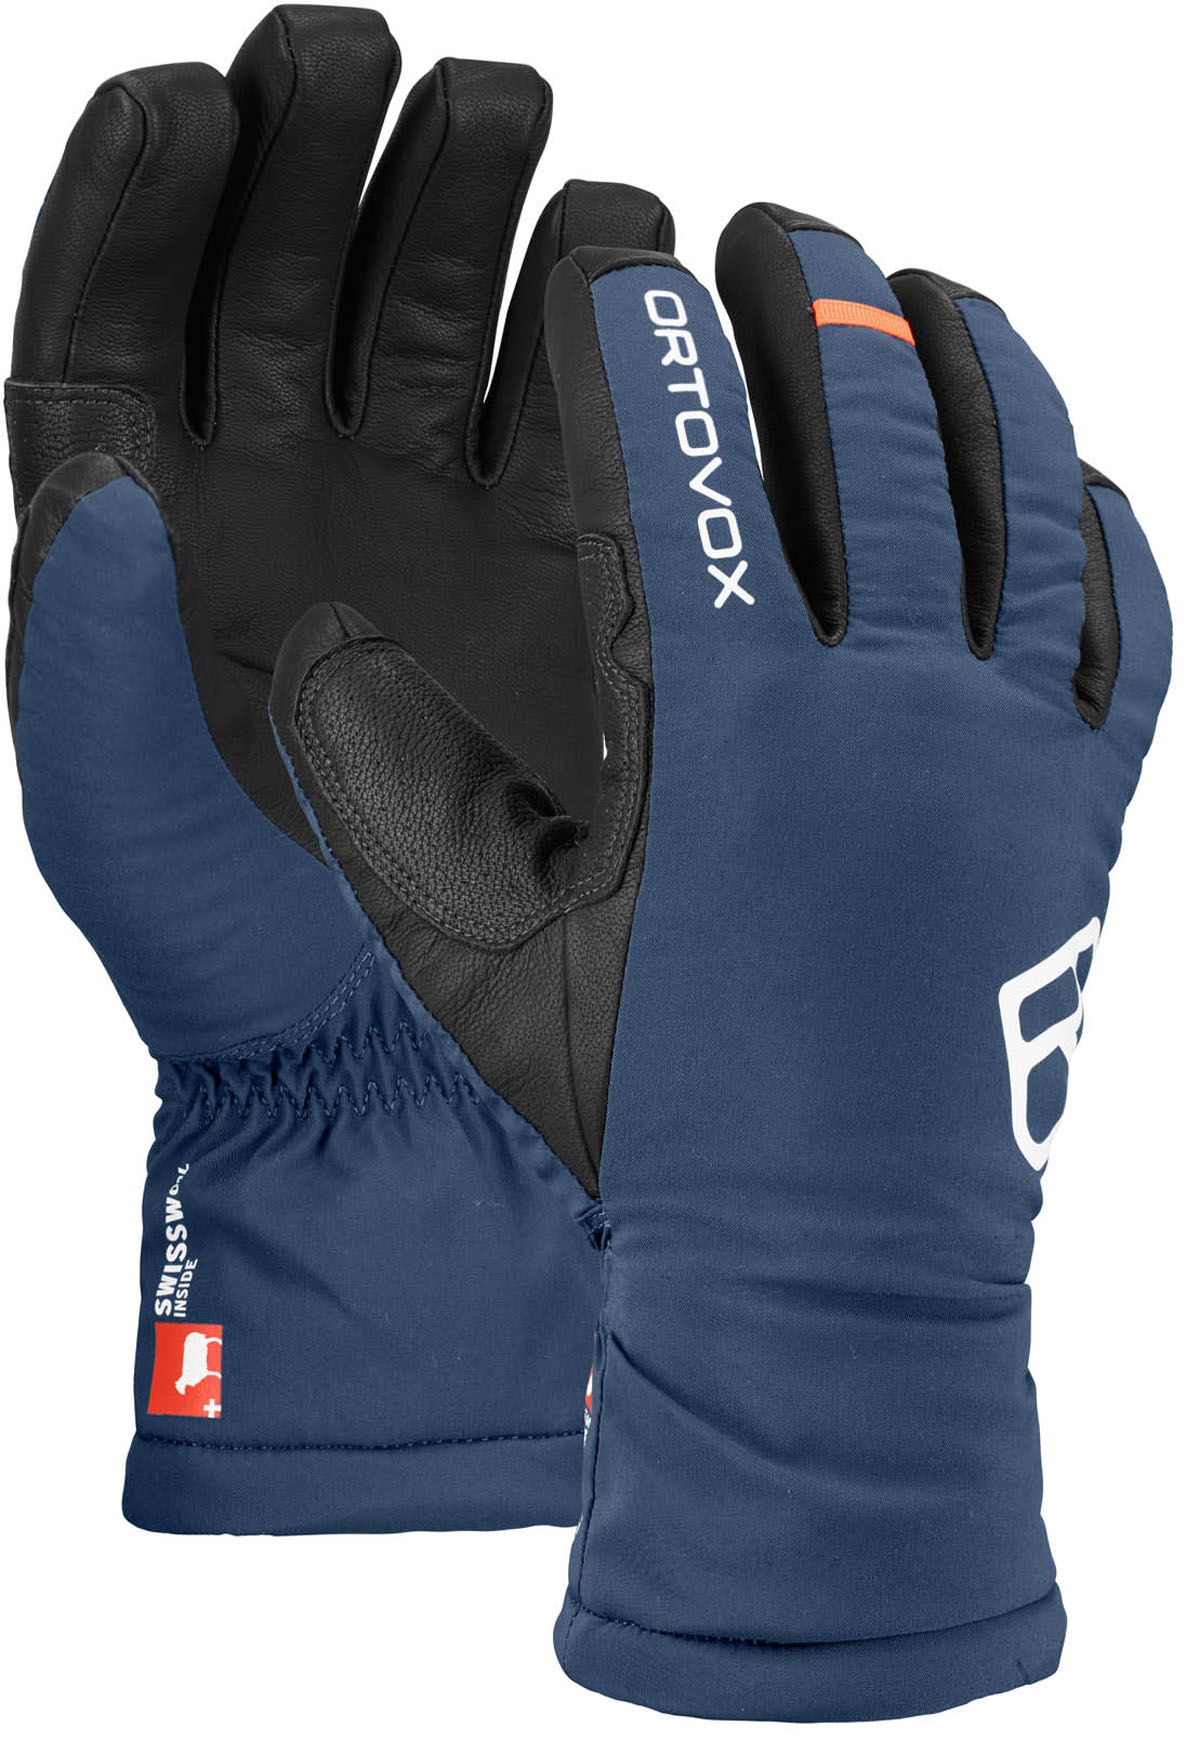 Лыжные перчатки для взрослых Ortovox Tour Night Blue (L)